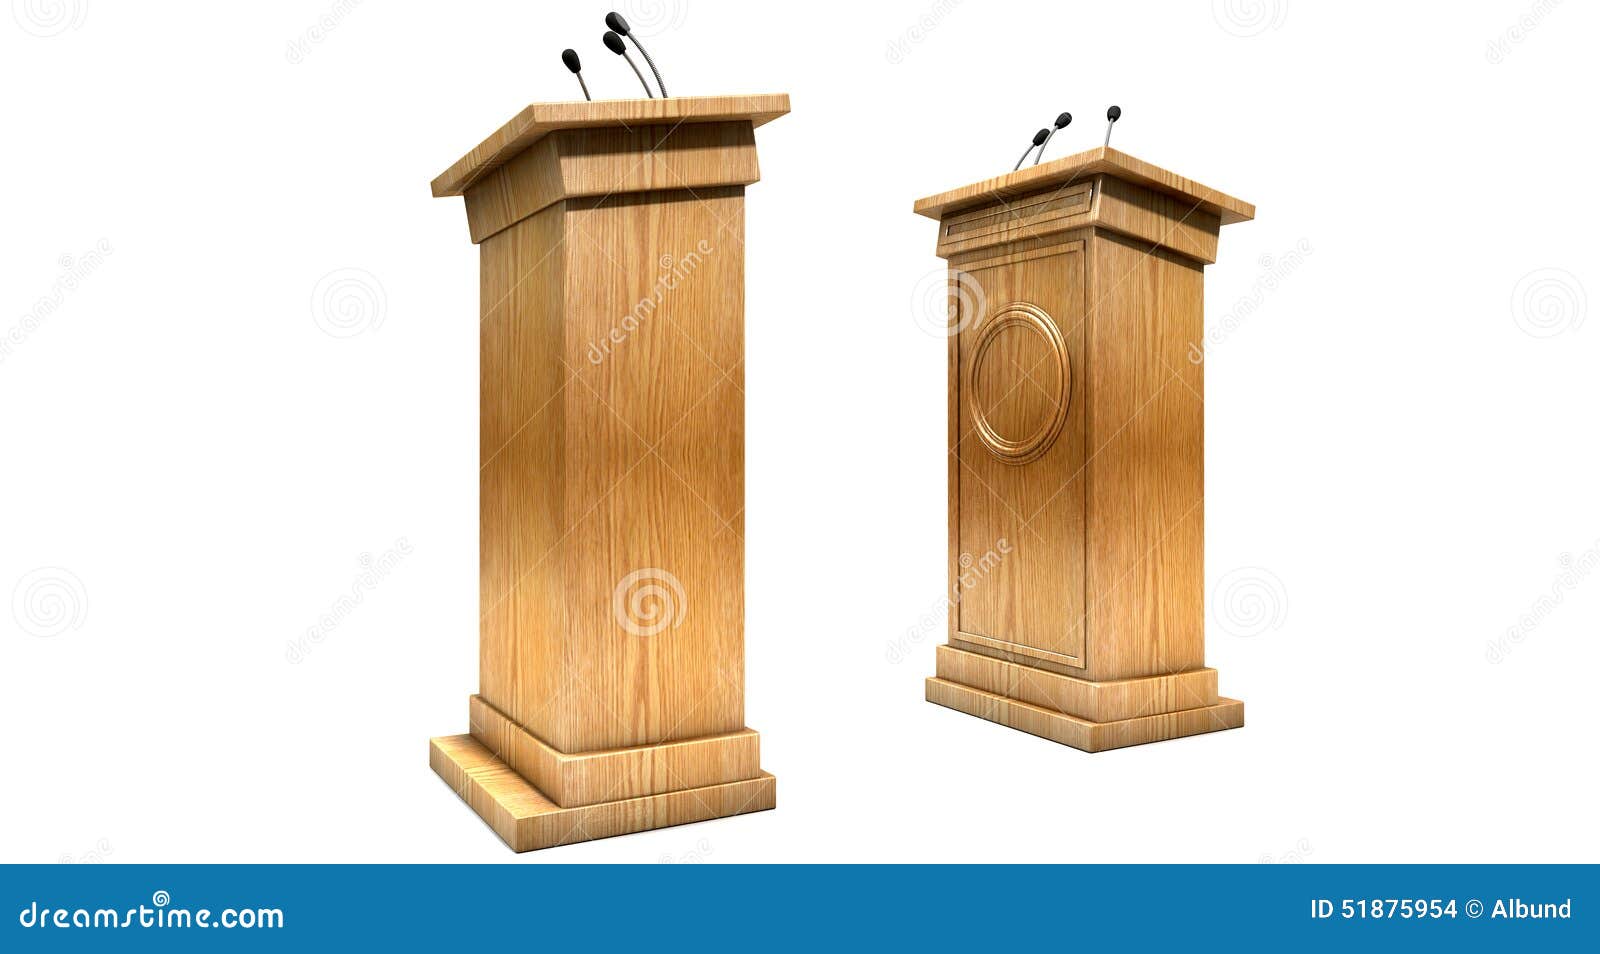 opposing debate podiums